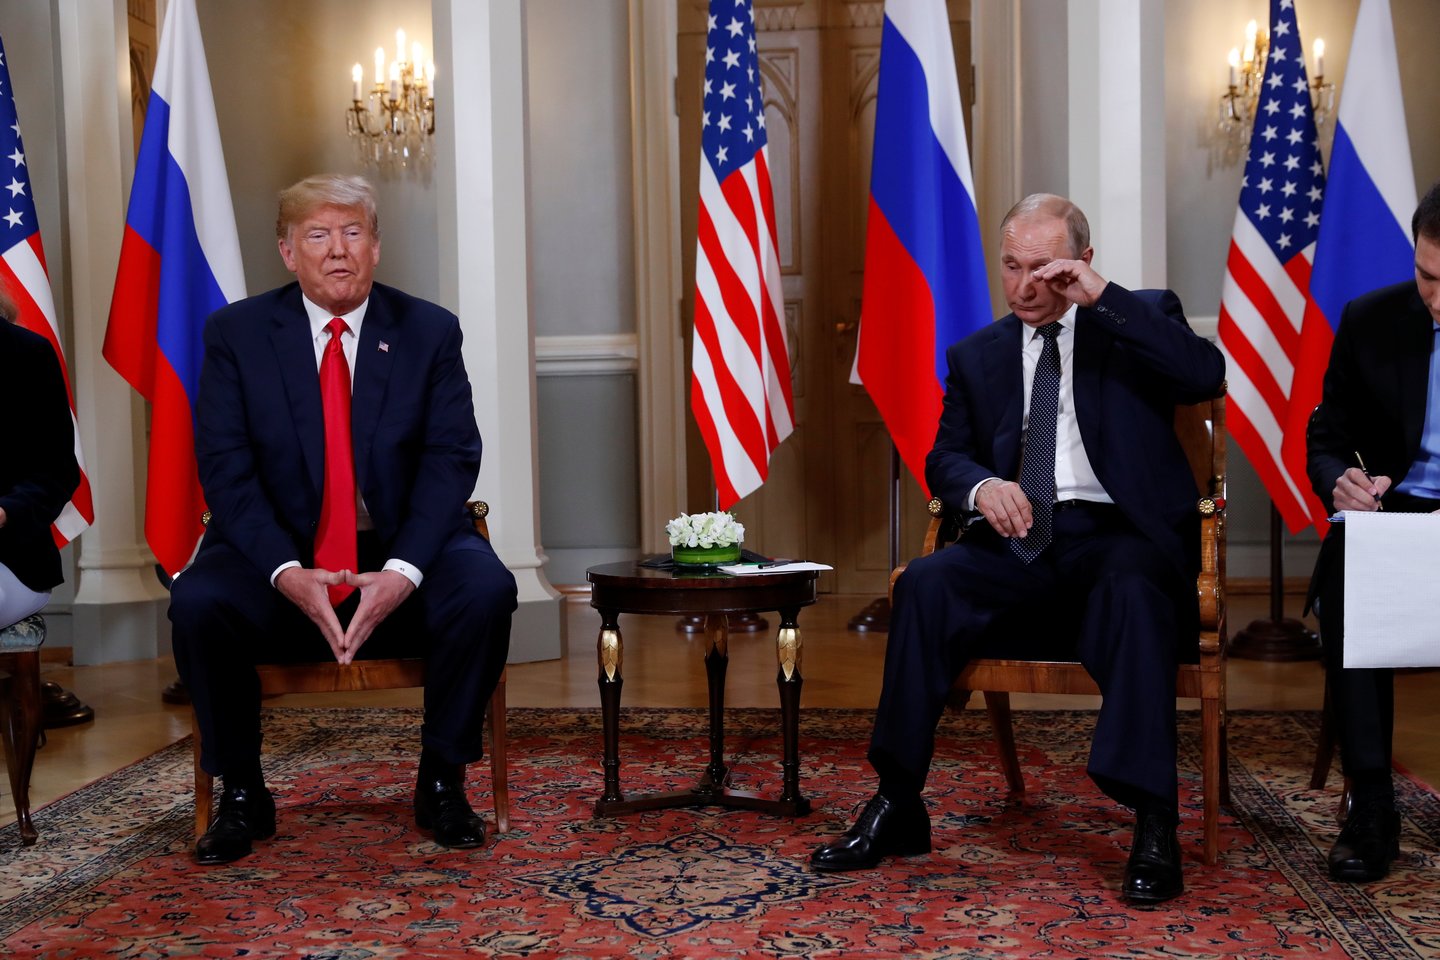 Praėjusį mėnesį įvyko JAV ir Rusijos viršūnių susitikimas. Jame Vladimiras Putinas Donaldui Trumpui pateikė ilgą sąrašą prašymų ir pasiūlymų ginklų kontrolės tema. <br>Reuters/Scanpix nuotr.